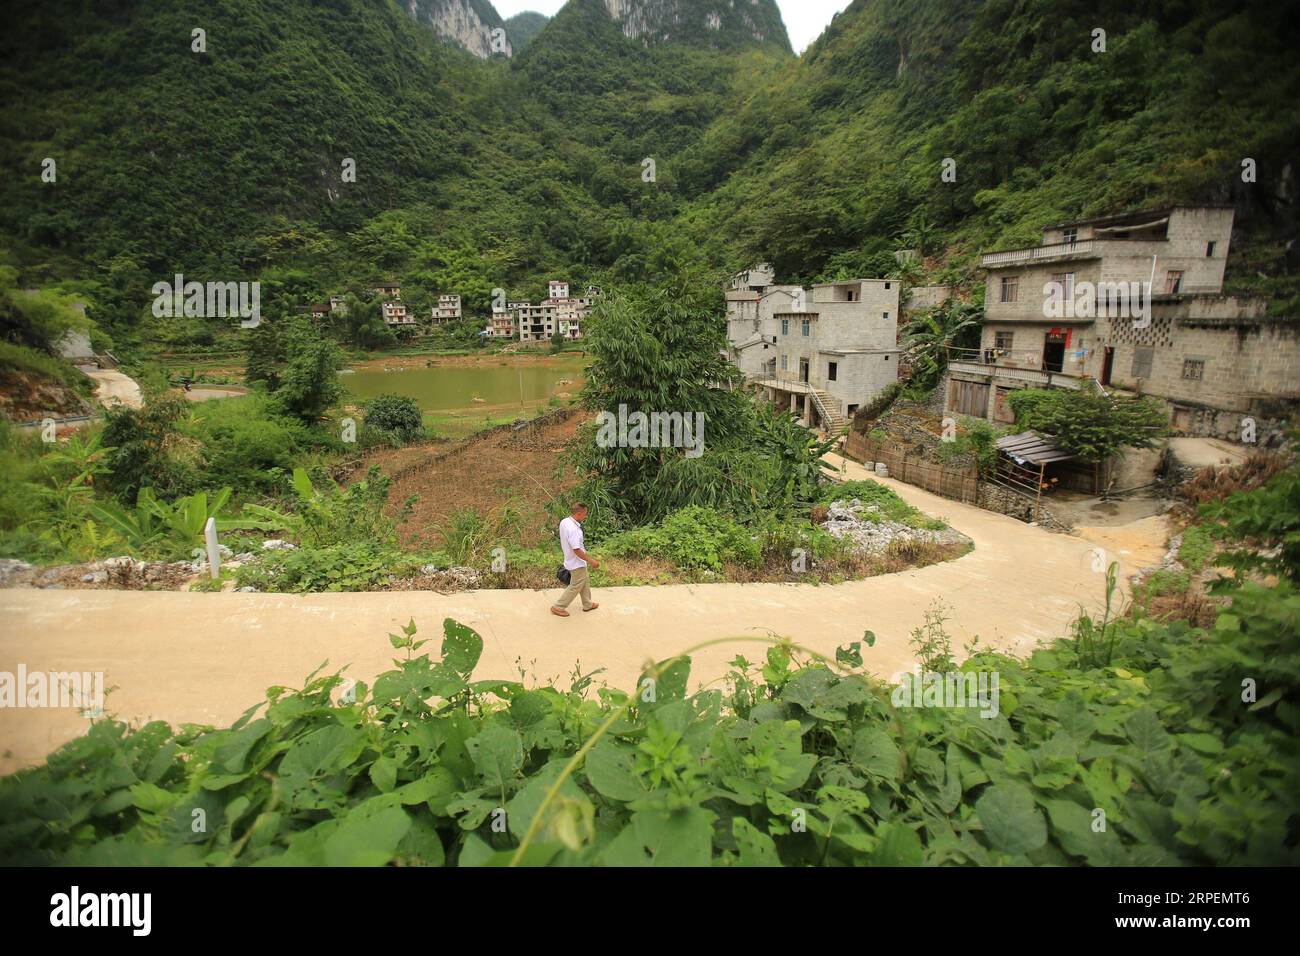 (190901) -- LINGYUN, 1 septembre 2019 -- Lao Ketuan marche vers sa maison dans le village de Haokun, dans le comté de Lingyun, dans la région autonome de Guangxi Zhuang, dans le sud de la Chine, 30 août 2019. Lao Ketuan, 40 ans, vit dans le village montagneux de Haokun, un endroit où les transports sont extrêmement médiocres et où les ressources foncières sont rares, ce qui a sérieusement entravé le développement local et a plongé les gens dans la pauvreté. La famille AJO fait partie des ménages pauvres qui vivent ici. En 2016, Lao n’avait cependant jamais rêvé que sa famille pourrait sortir de la pauvreté grâce au travail des autorités locales sur la réduction de la pauvreté à travers tou Banque D'Images